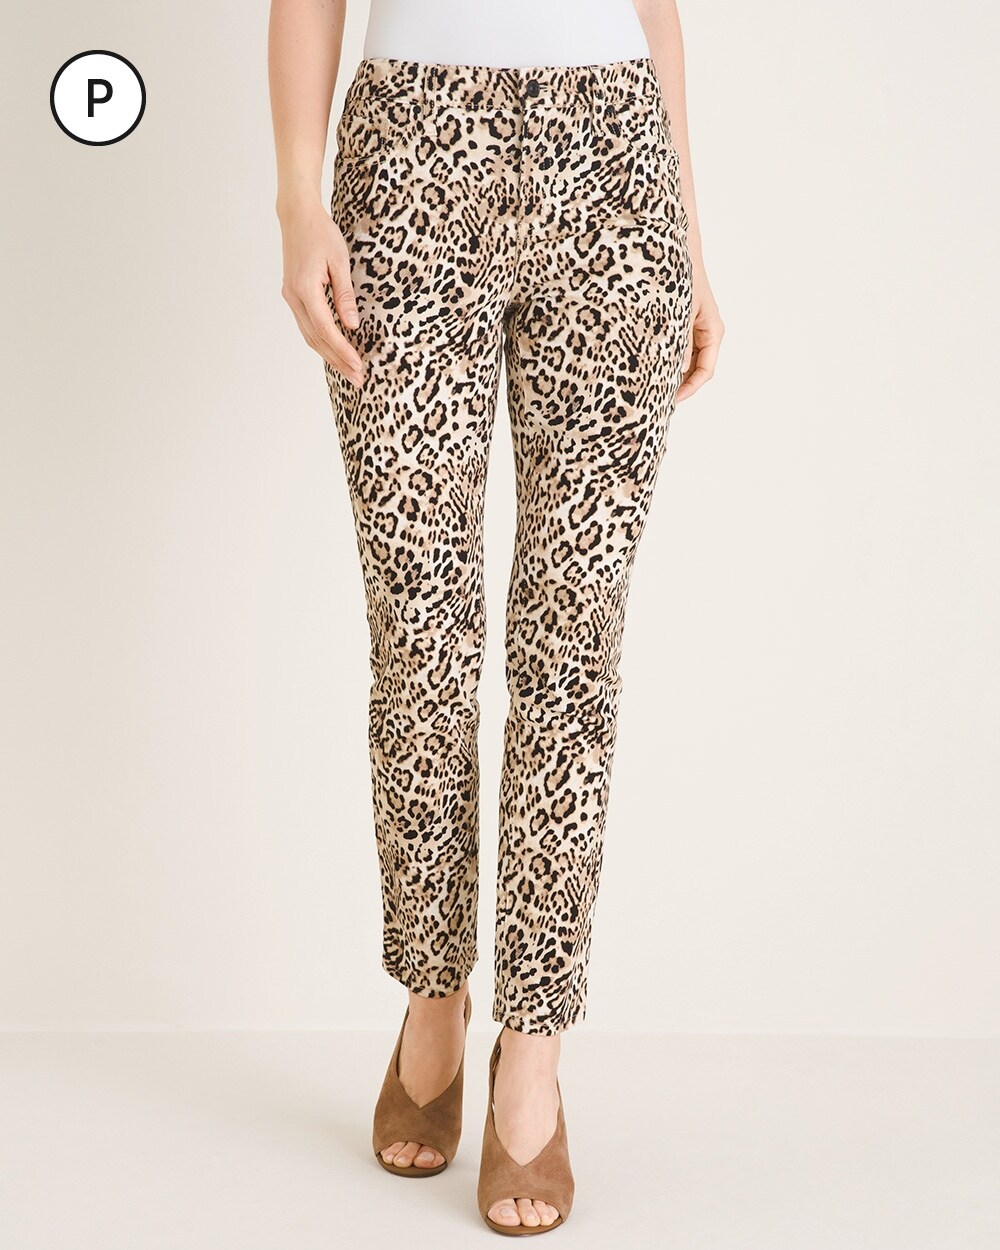 So Slimming Petite Cheetah-Print Girlfriend Ankle Jeans